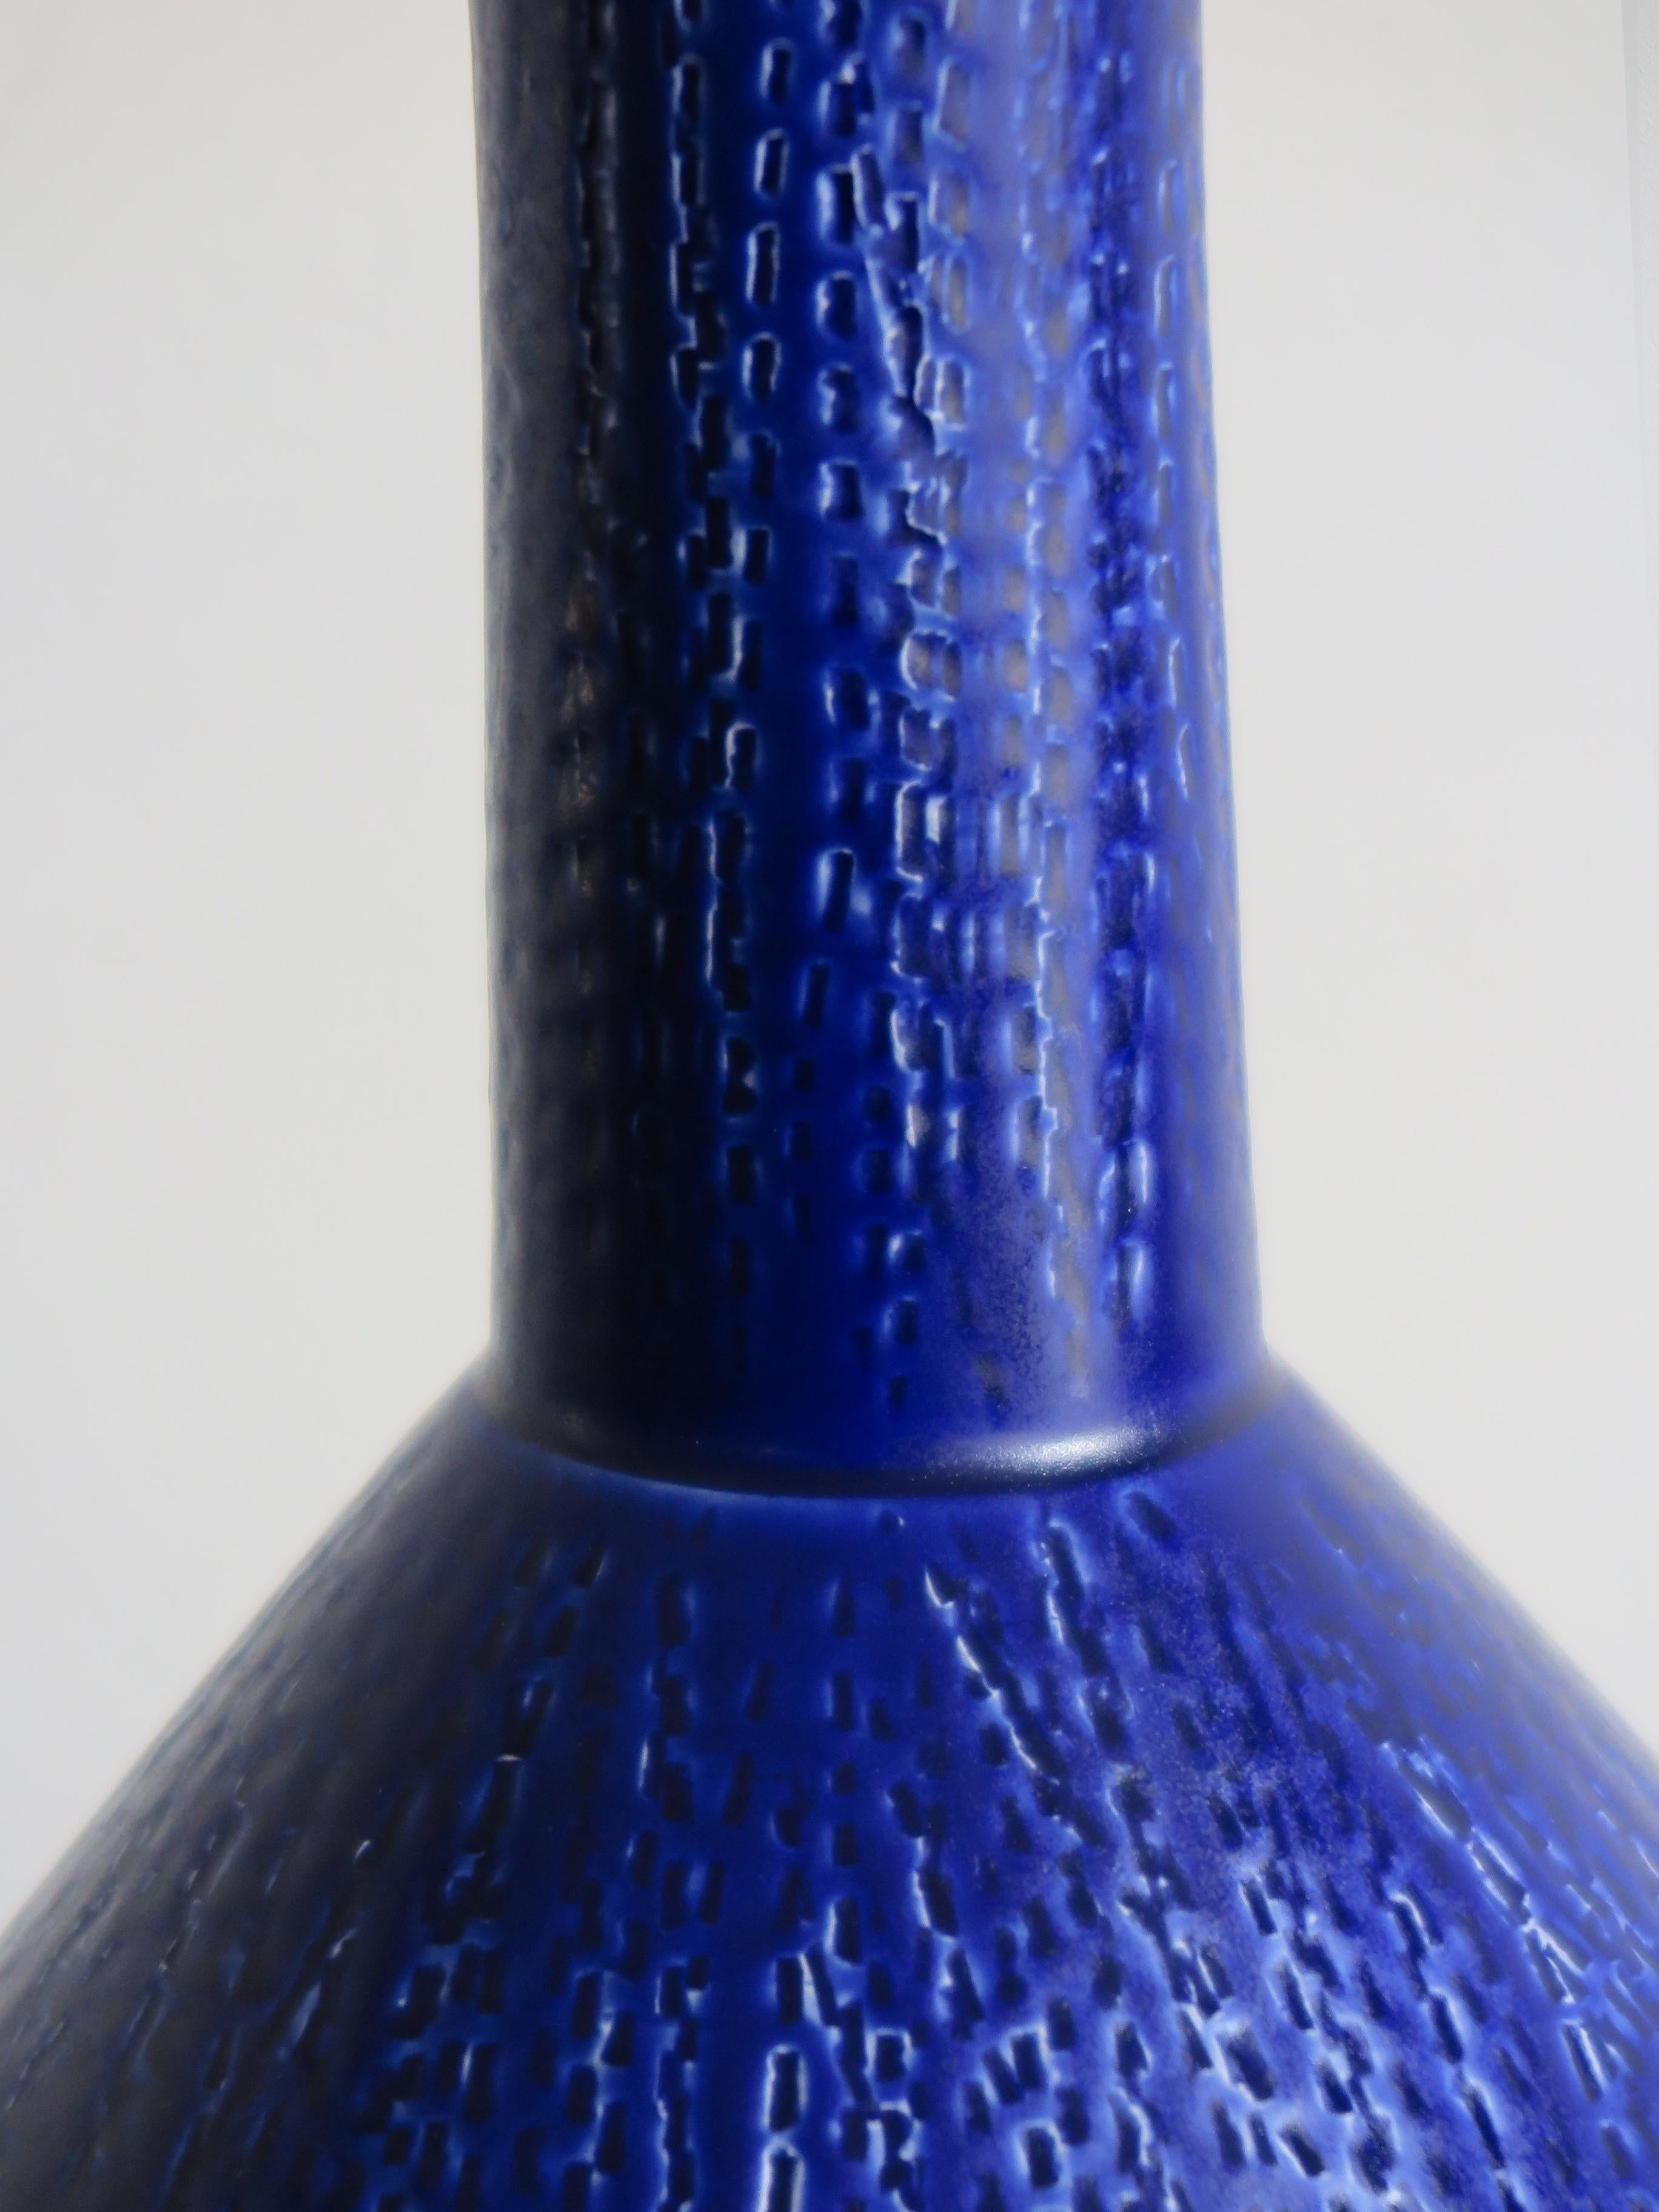 Painted Italian Ceramic Blue Vase Designed by Capperidicasa